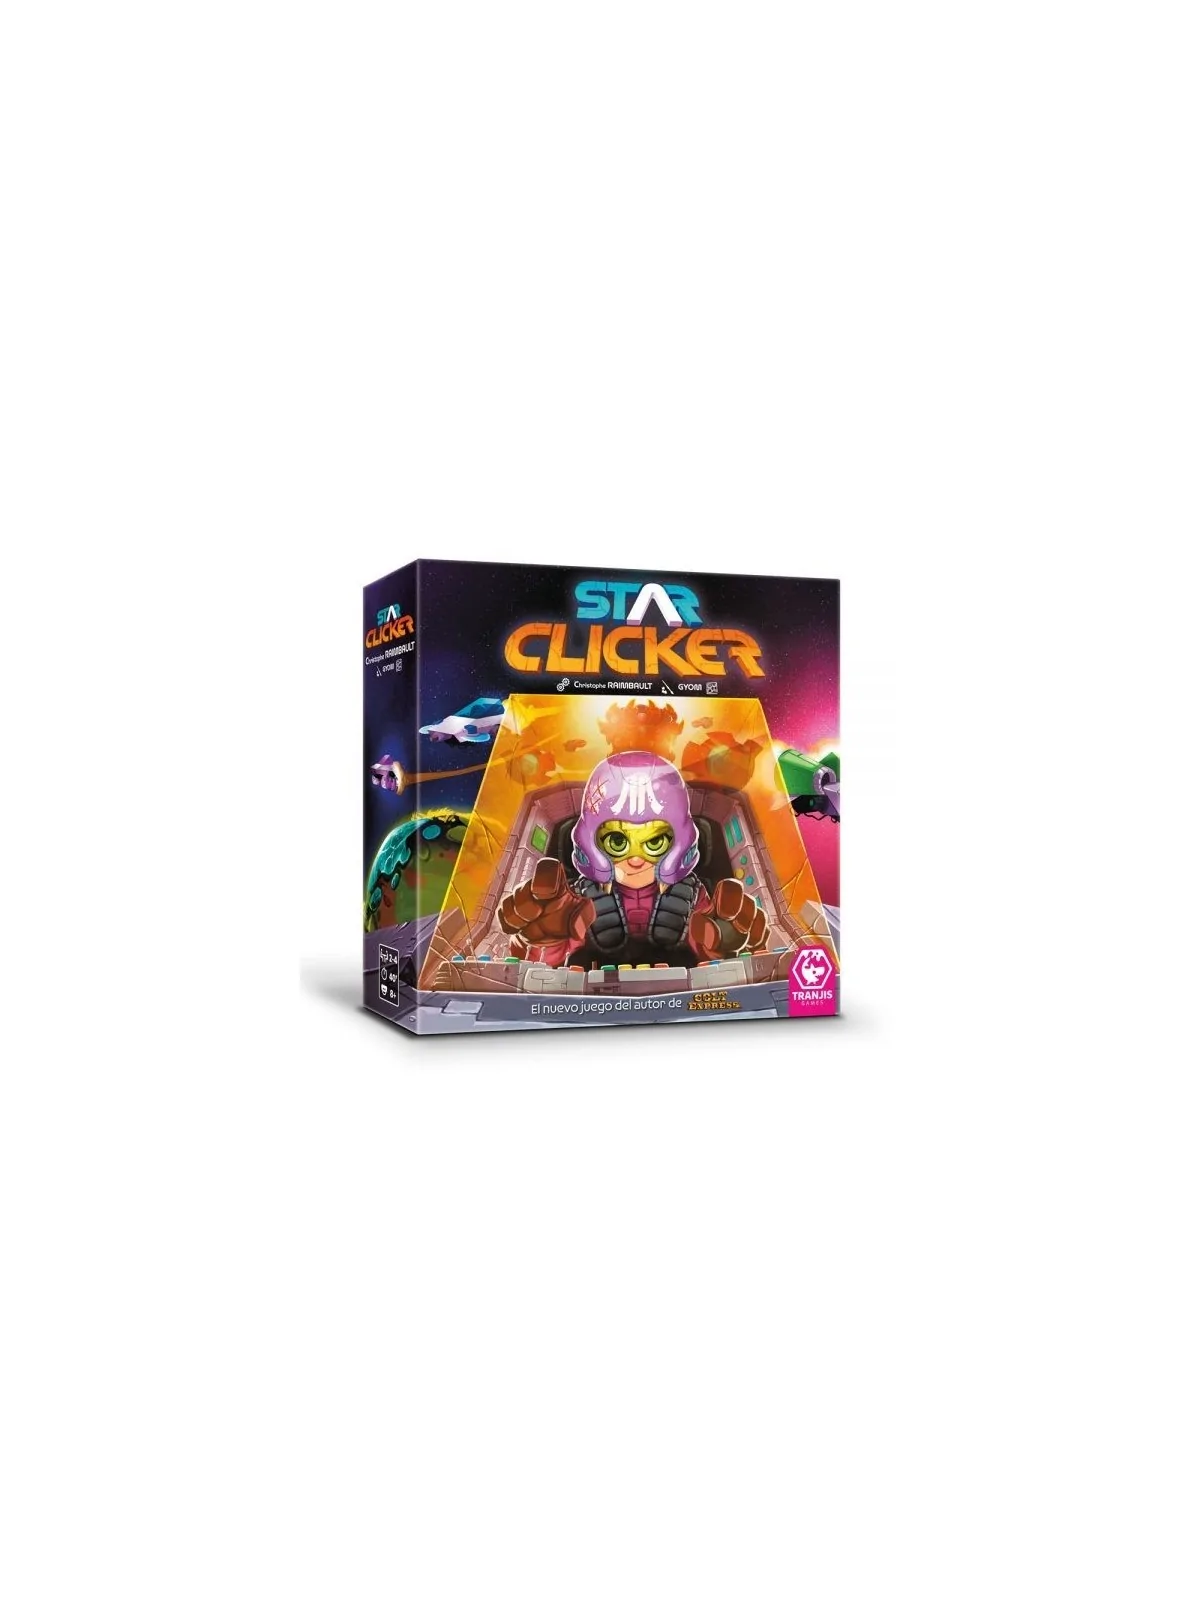 Comprar Star Clicker barato al mejor precio 29,71 € de Tranjis Games